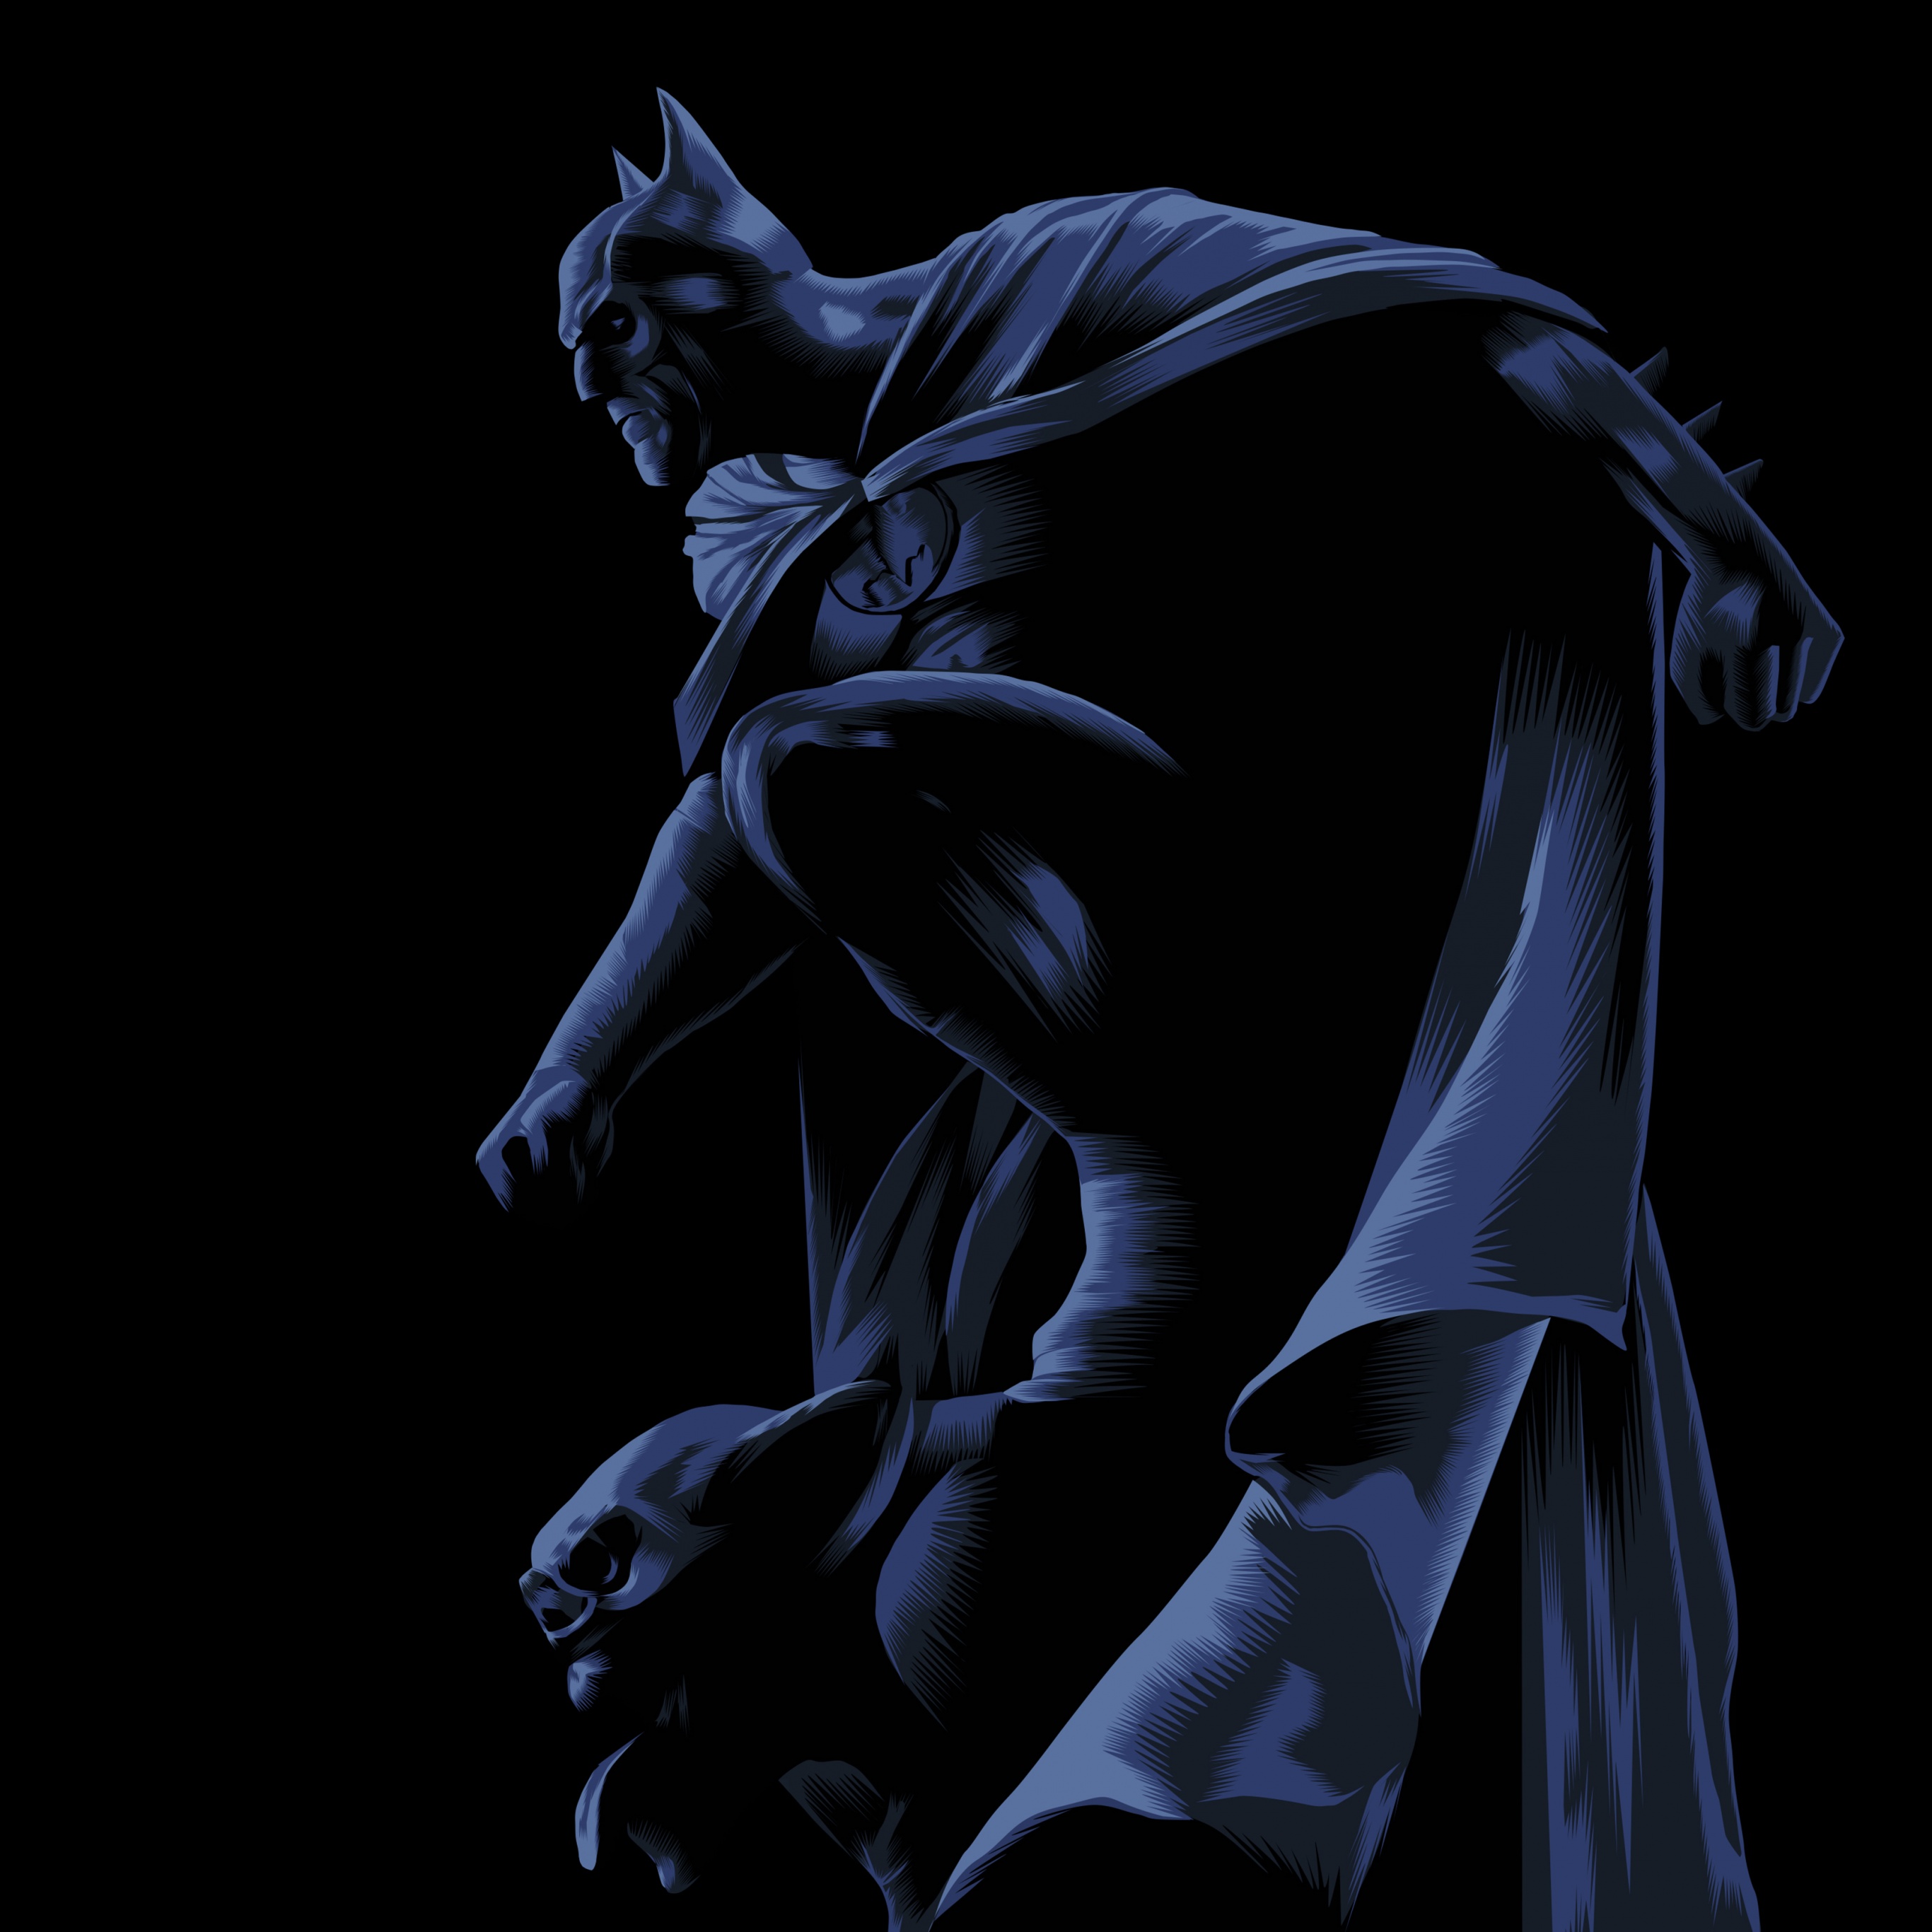 Batman And His Bats Behind Him 4K wallpaper download